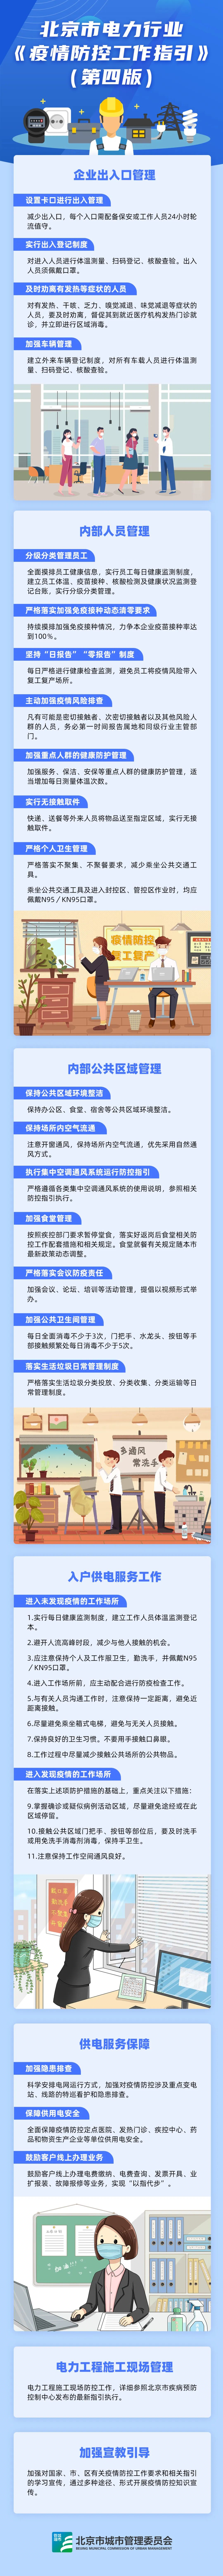 6.29北京市电力行业疫情防控工作指引（第四版）.jpg